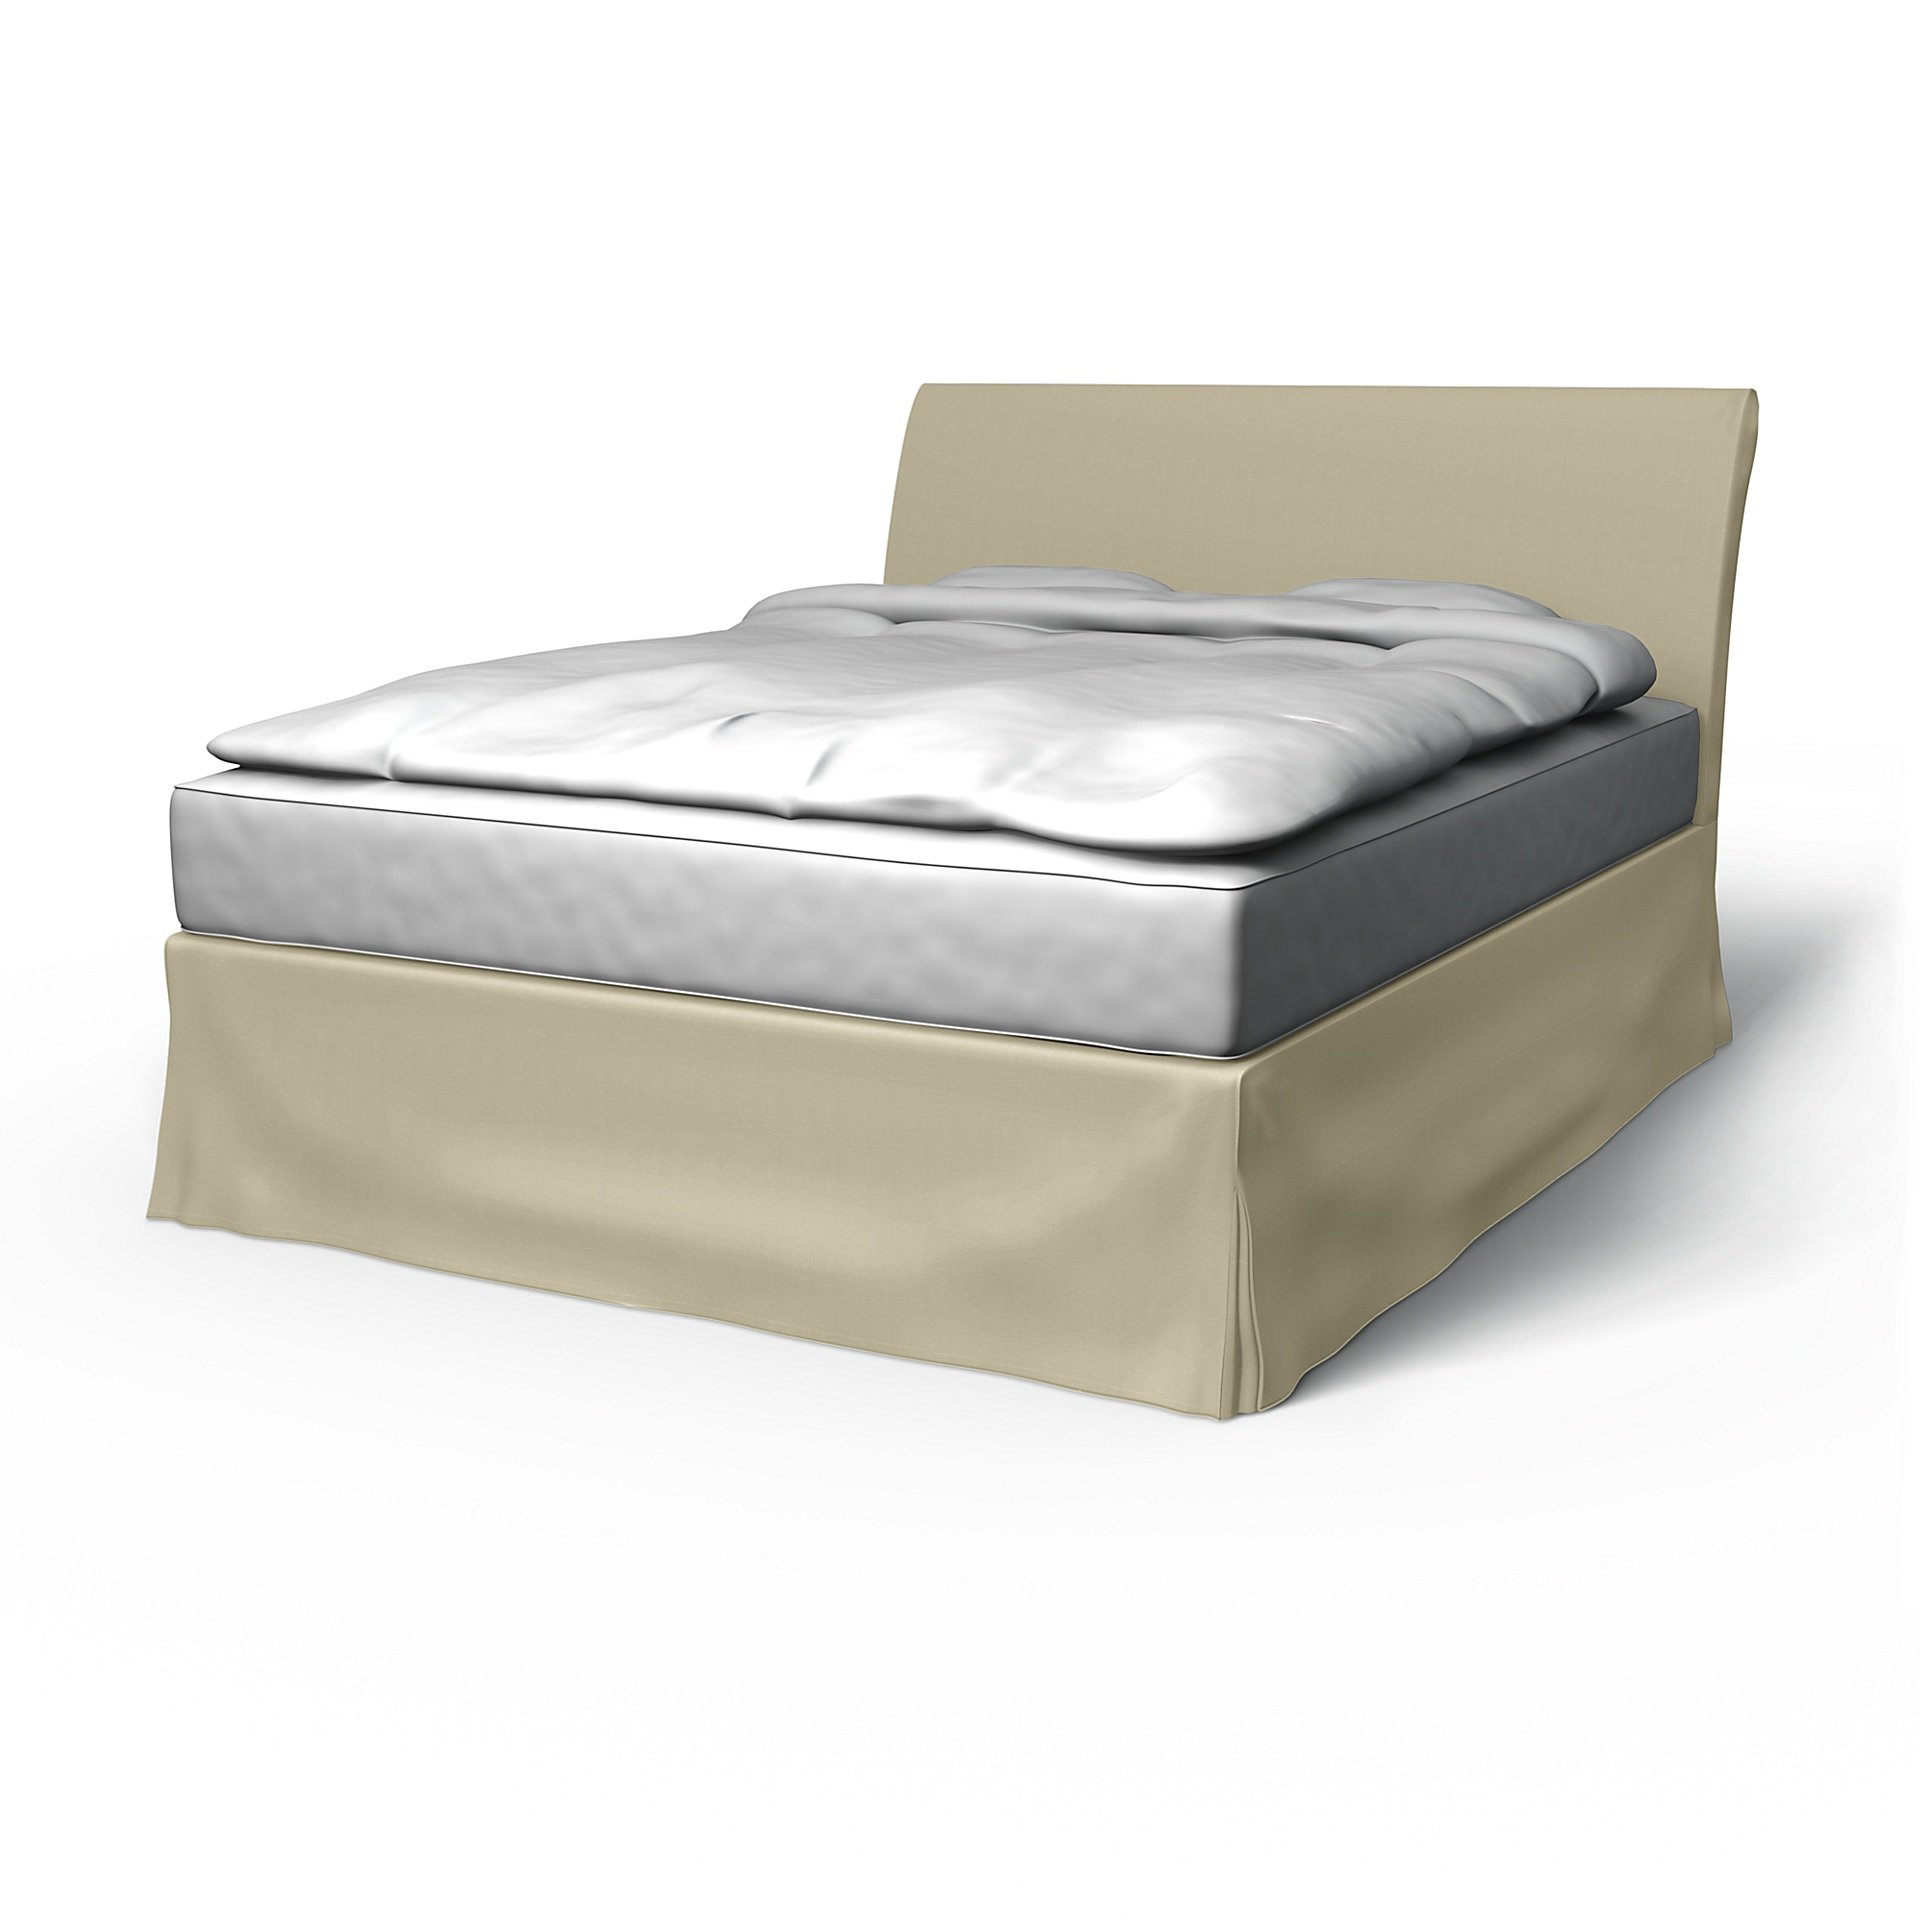 IKEA - Vanvik Bed Frame Cover, Sand Beige, Cotton - Bemz